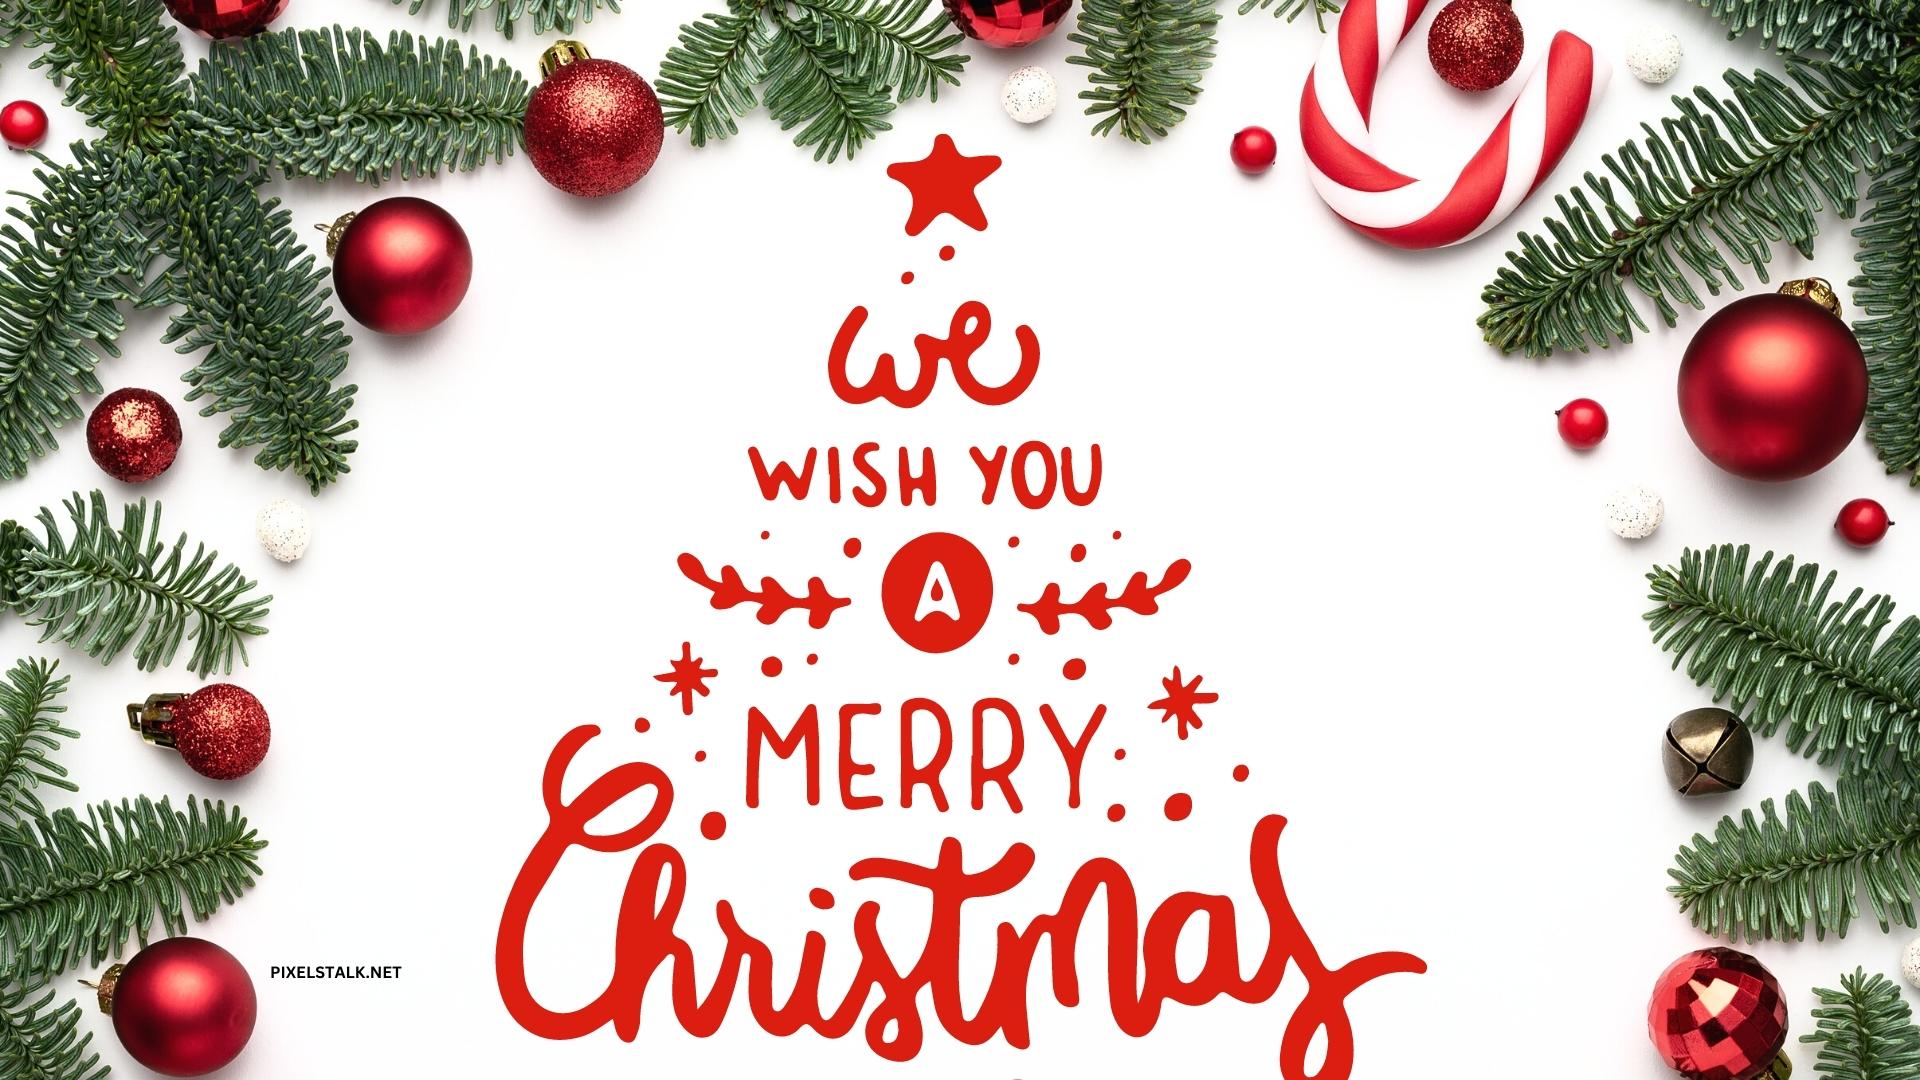 Merry Christmas Happy New Year Cute Vector có sẵn miễn phí bản quyền  721863619  Shutterstock